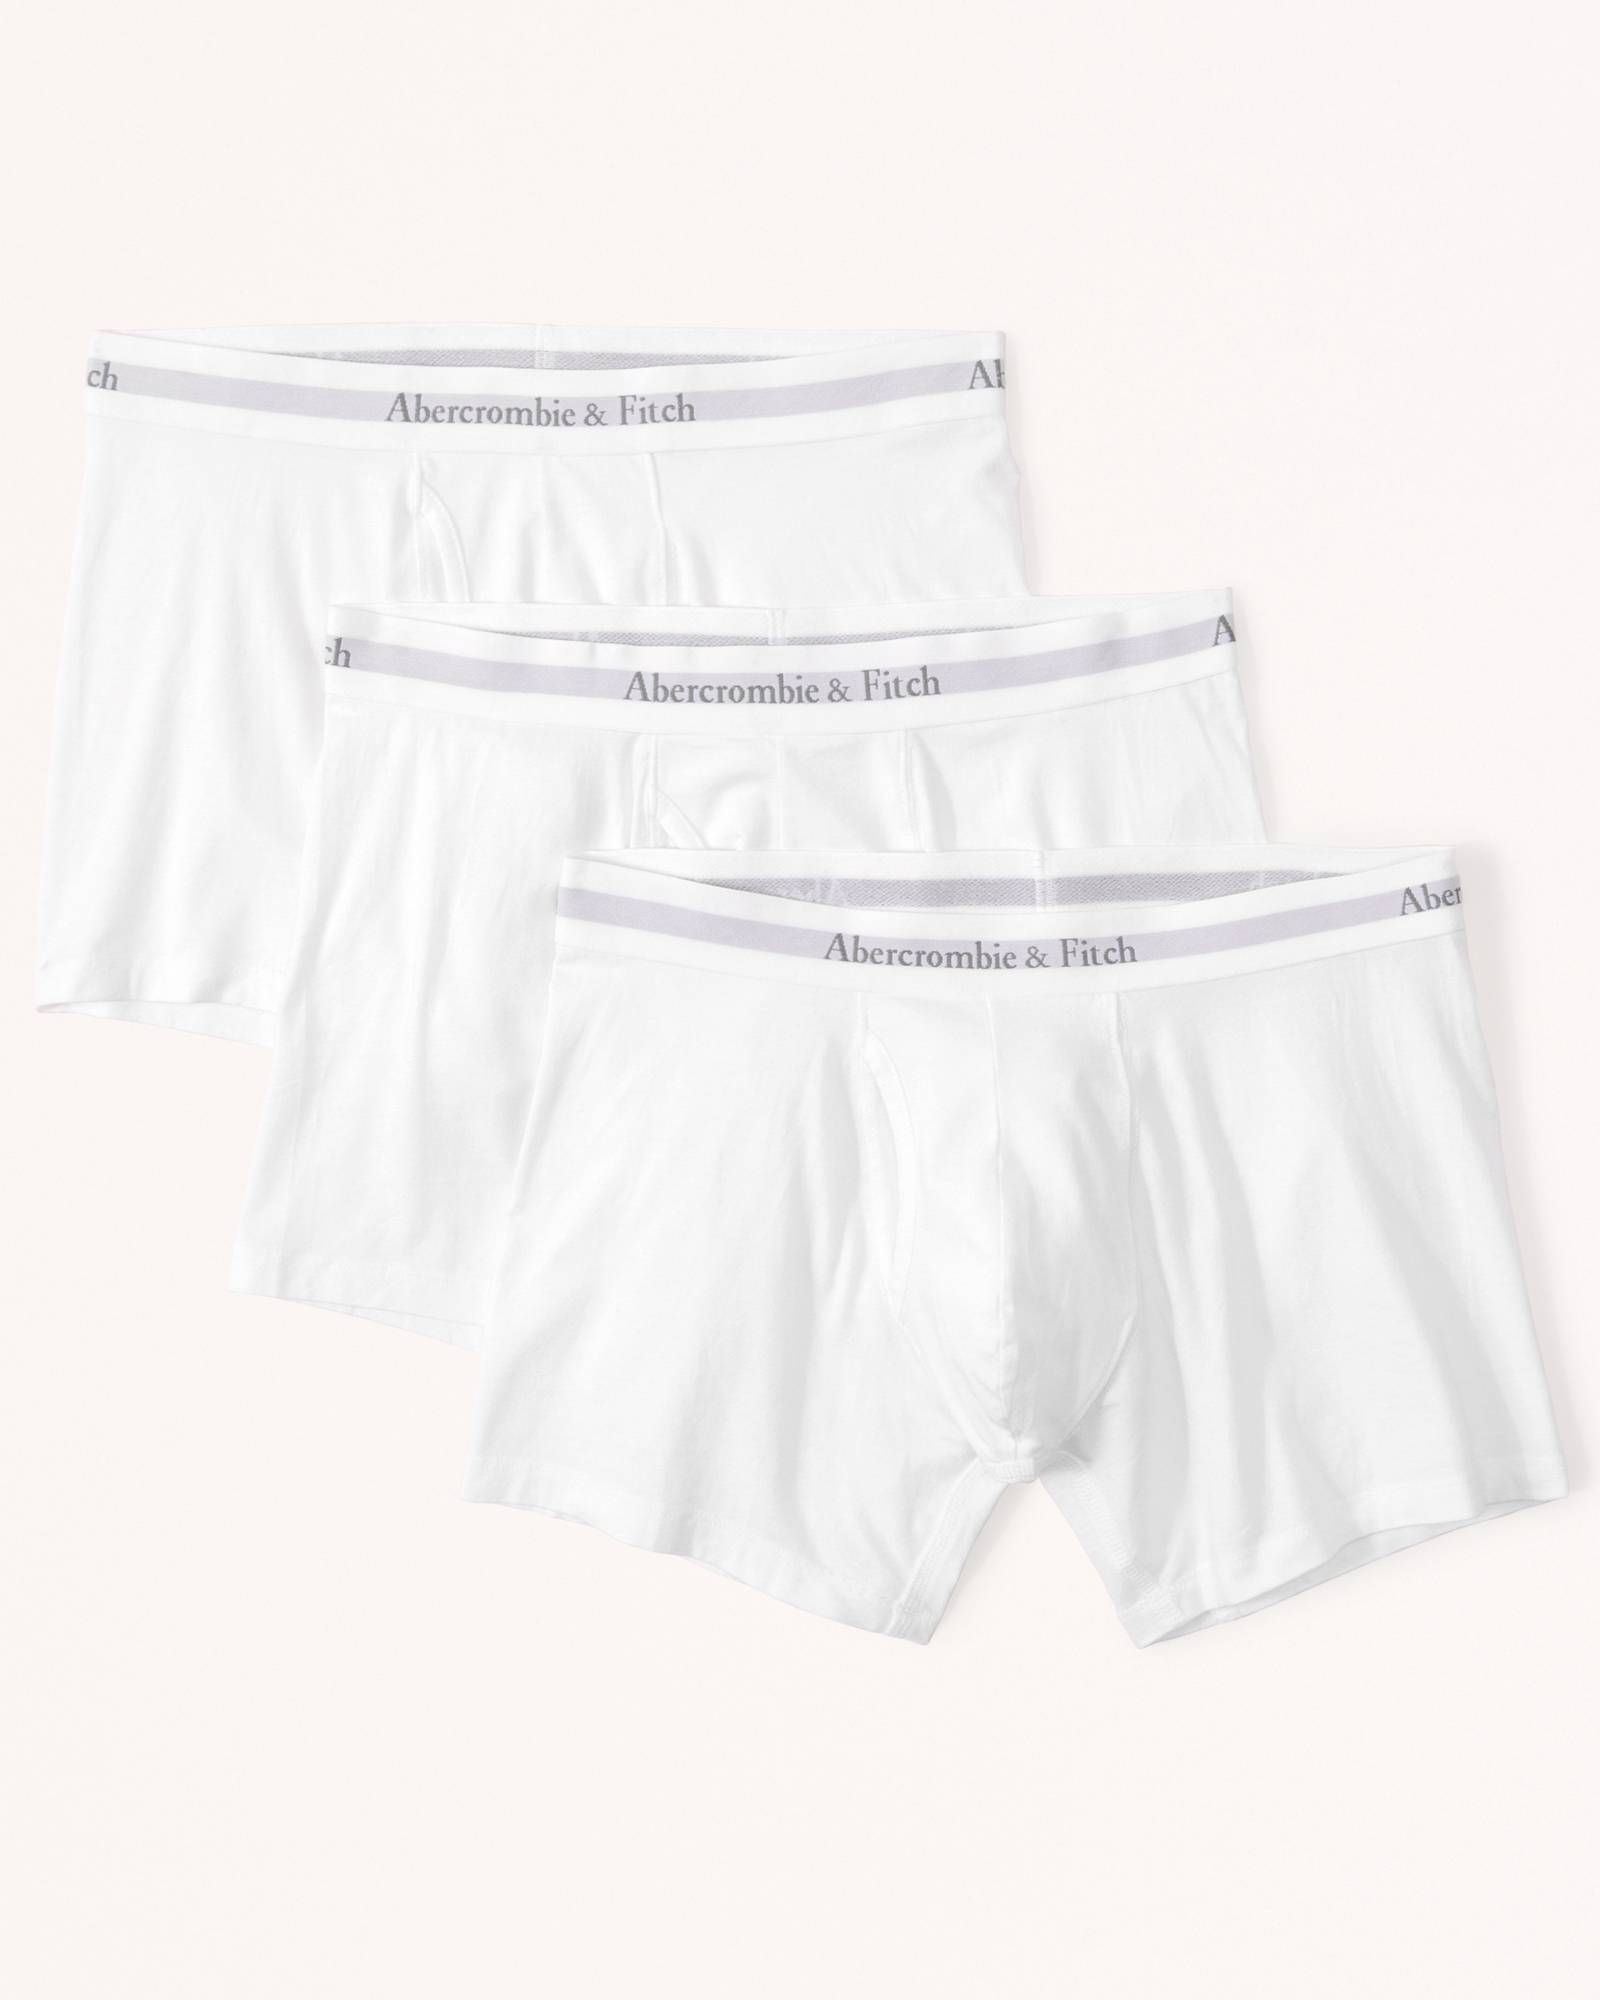  DIYAGO MEN Boxers Underwear Soft Comfort Cheap Briefs